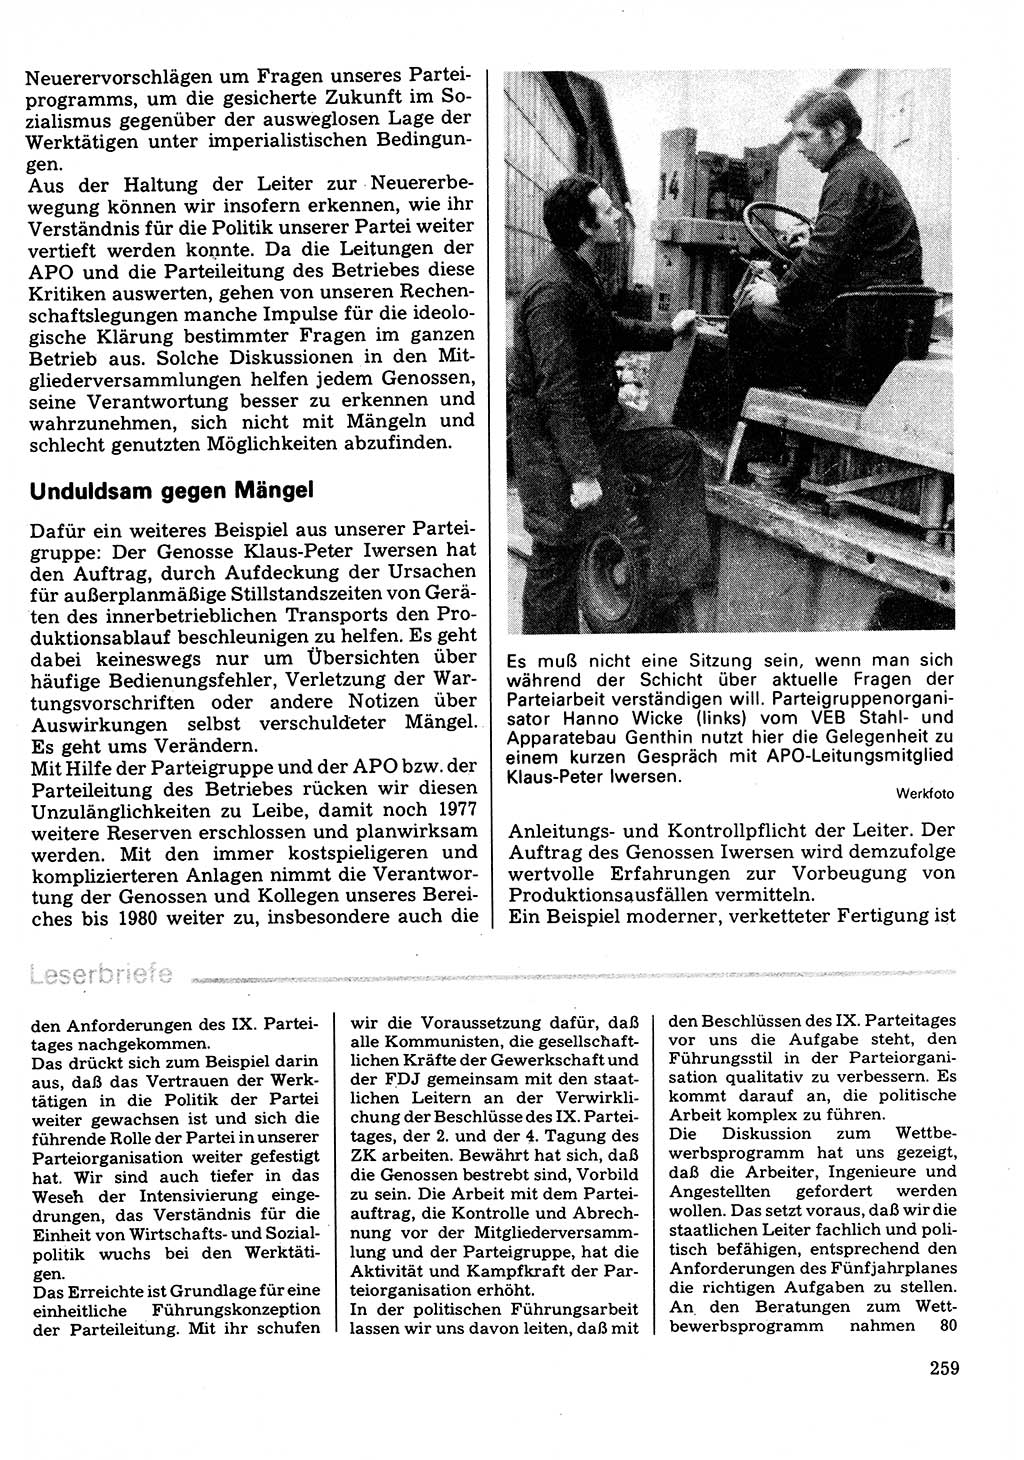 Neuer Weg (NW), Organ des Zentralkomitees (ZK) der SED (Sozialistische Einheitspartei Deutschlands) für Fragen des Parteilebens, 32. Jahrgang [Deutsche Demokratische Republik (DDR)] 1977, Seite 259 (NW ZK SED DDR 1977, S. 259)